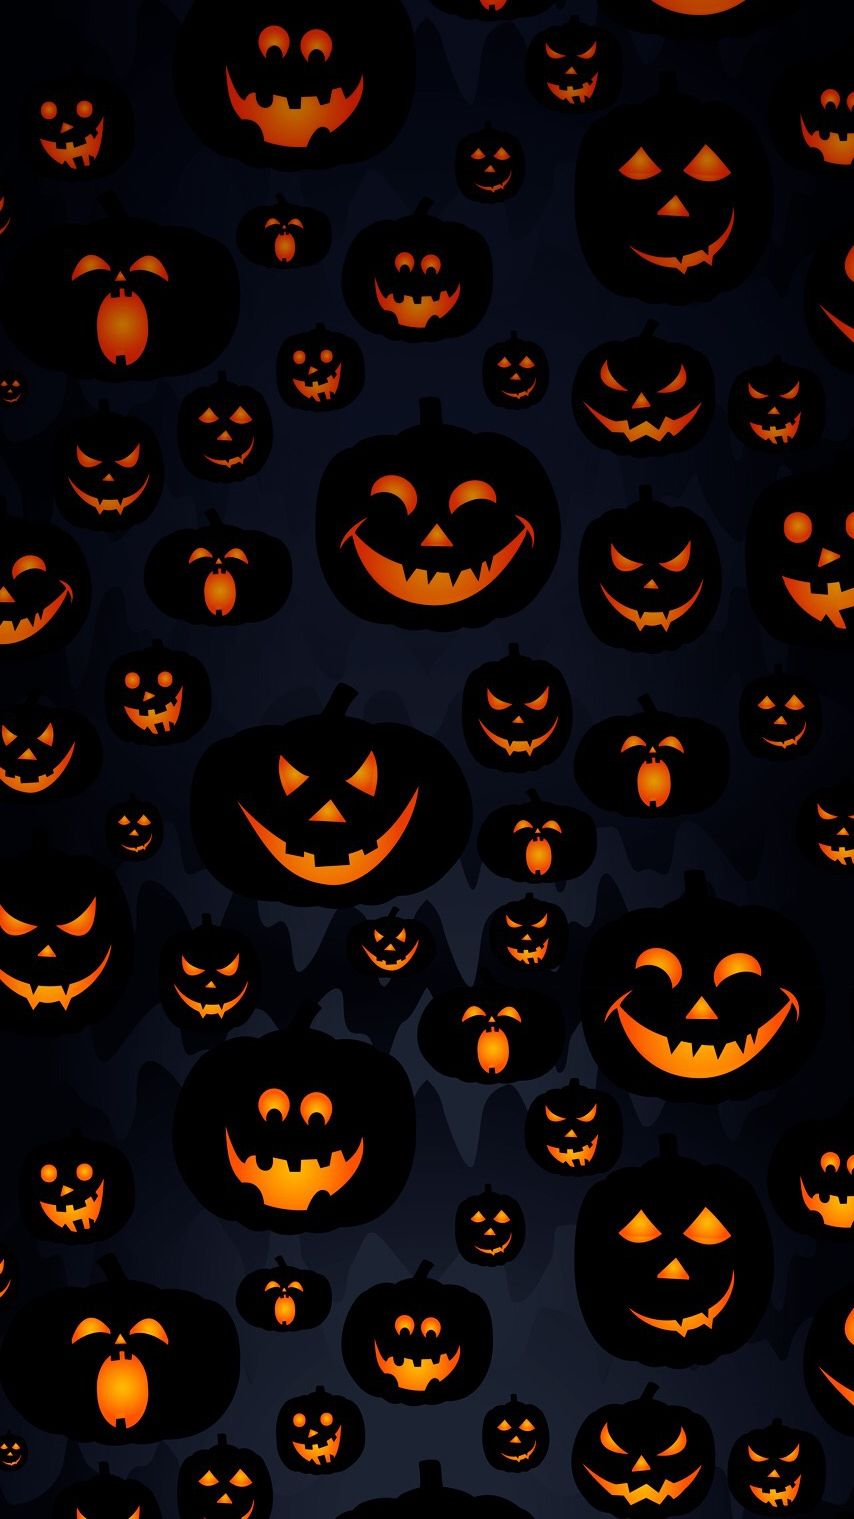 Best Neon Pumpkin Sign Halloween Wallpaper Image